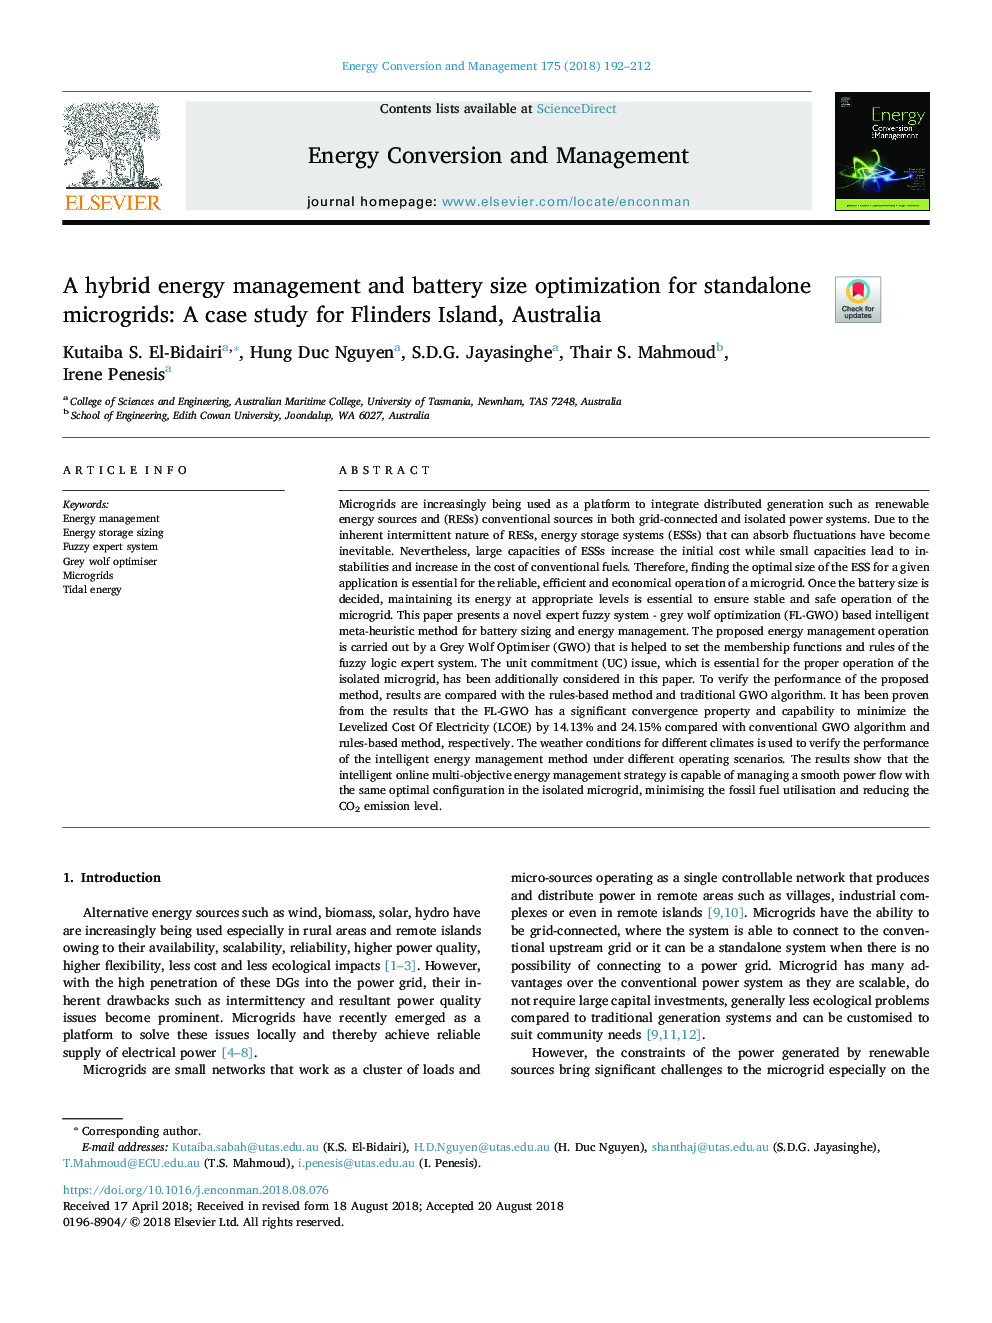 مدیریت انرژی ترکیبی و بهینه سازی باتری برای میکروجیج های مستقل: یک مطالعه مورد برای جزیره فلیندرز، استرالیا